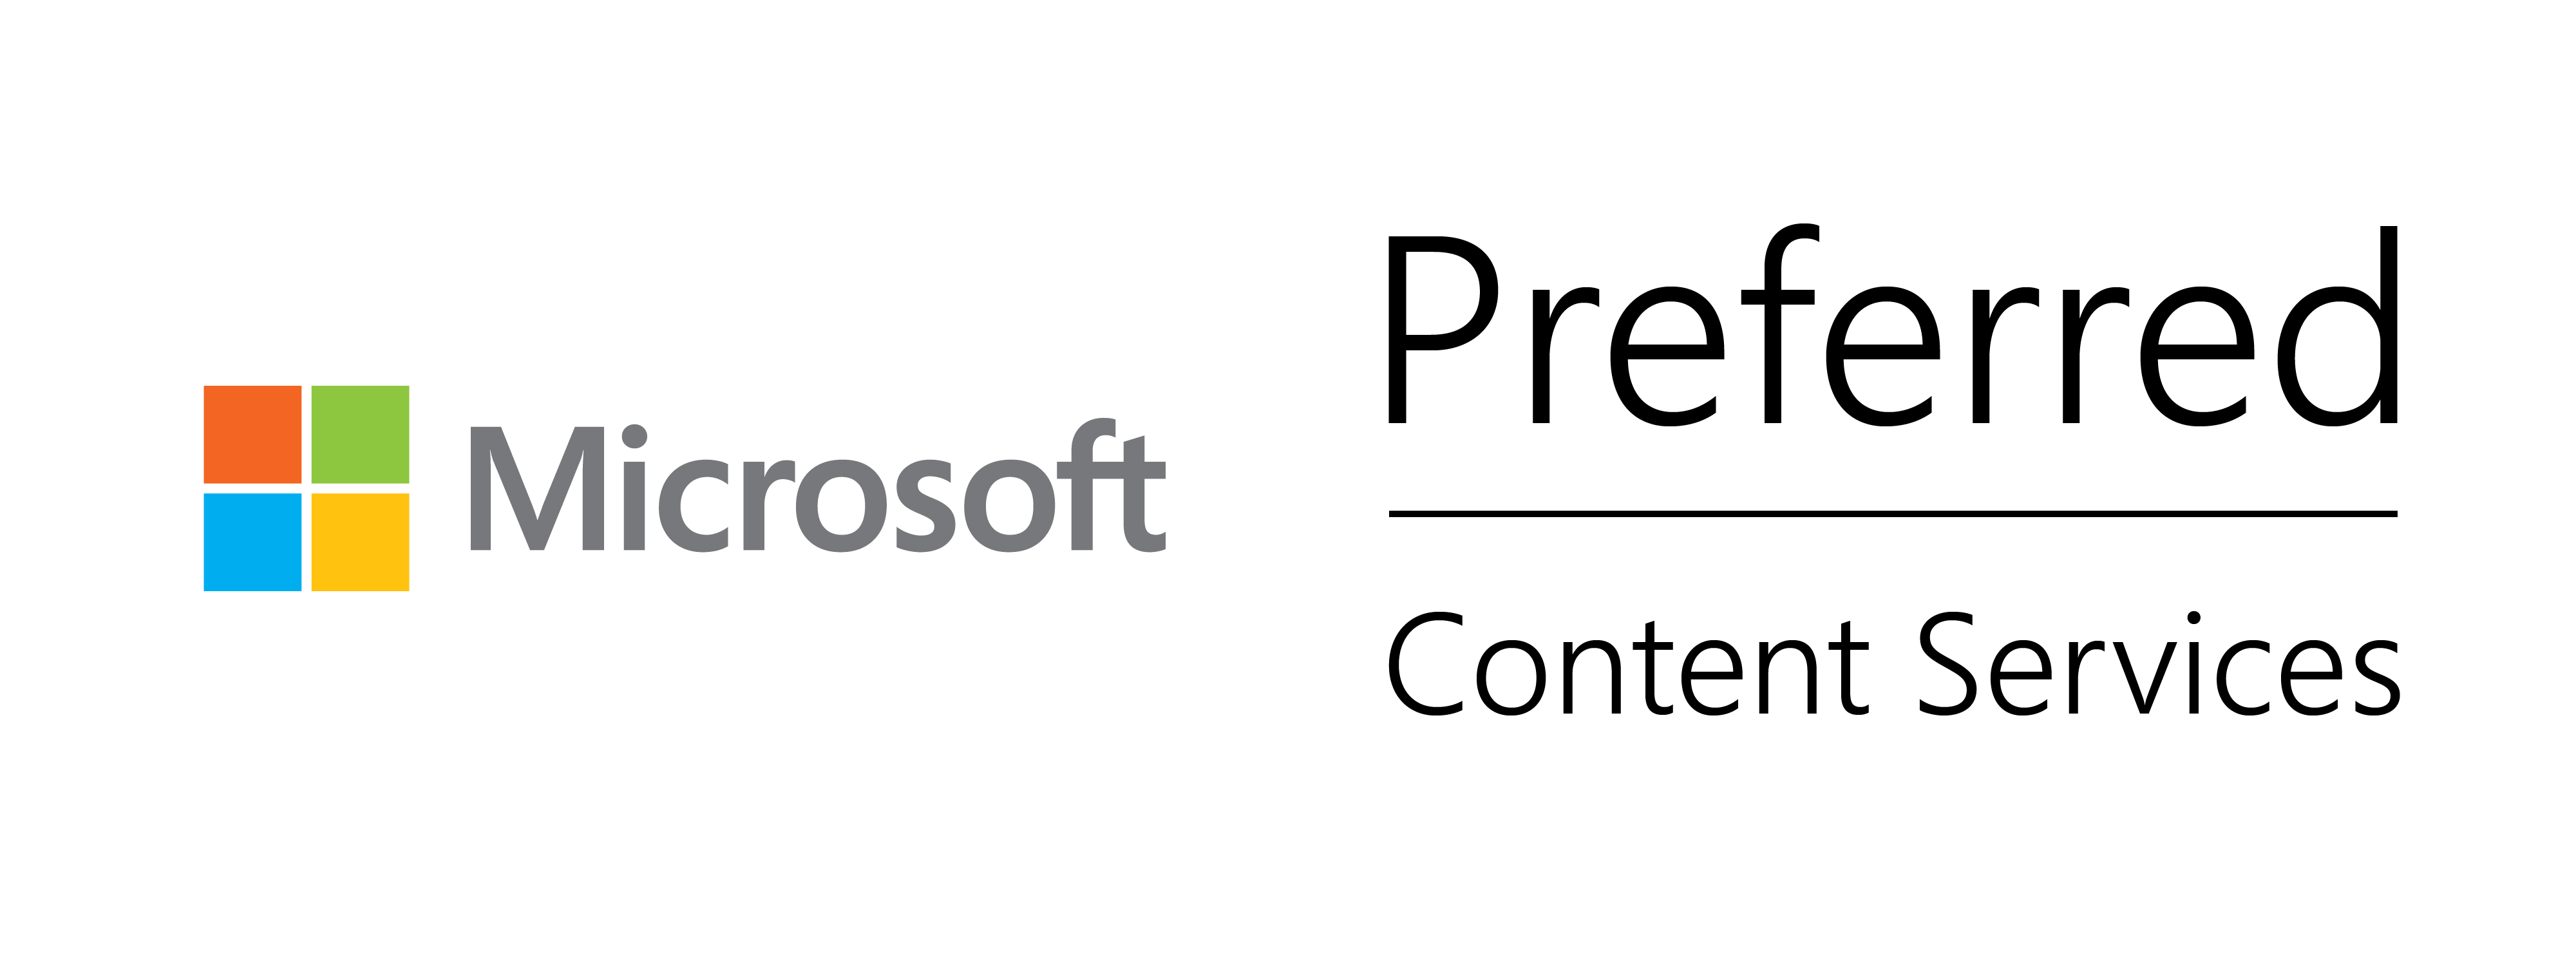 Microsoft Preferred Content Services